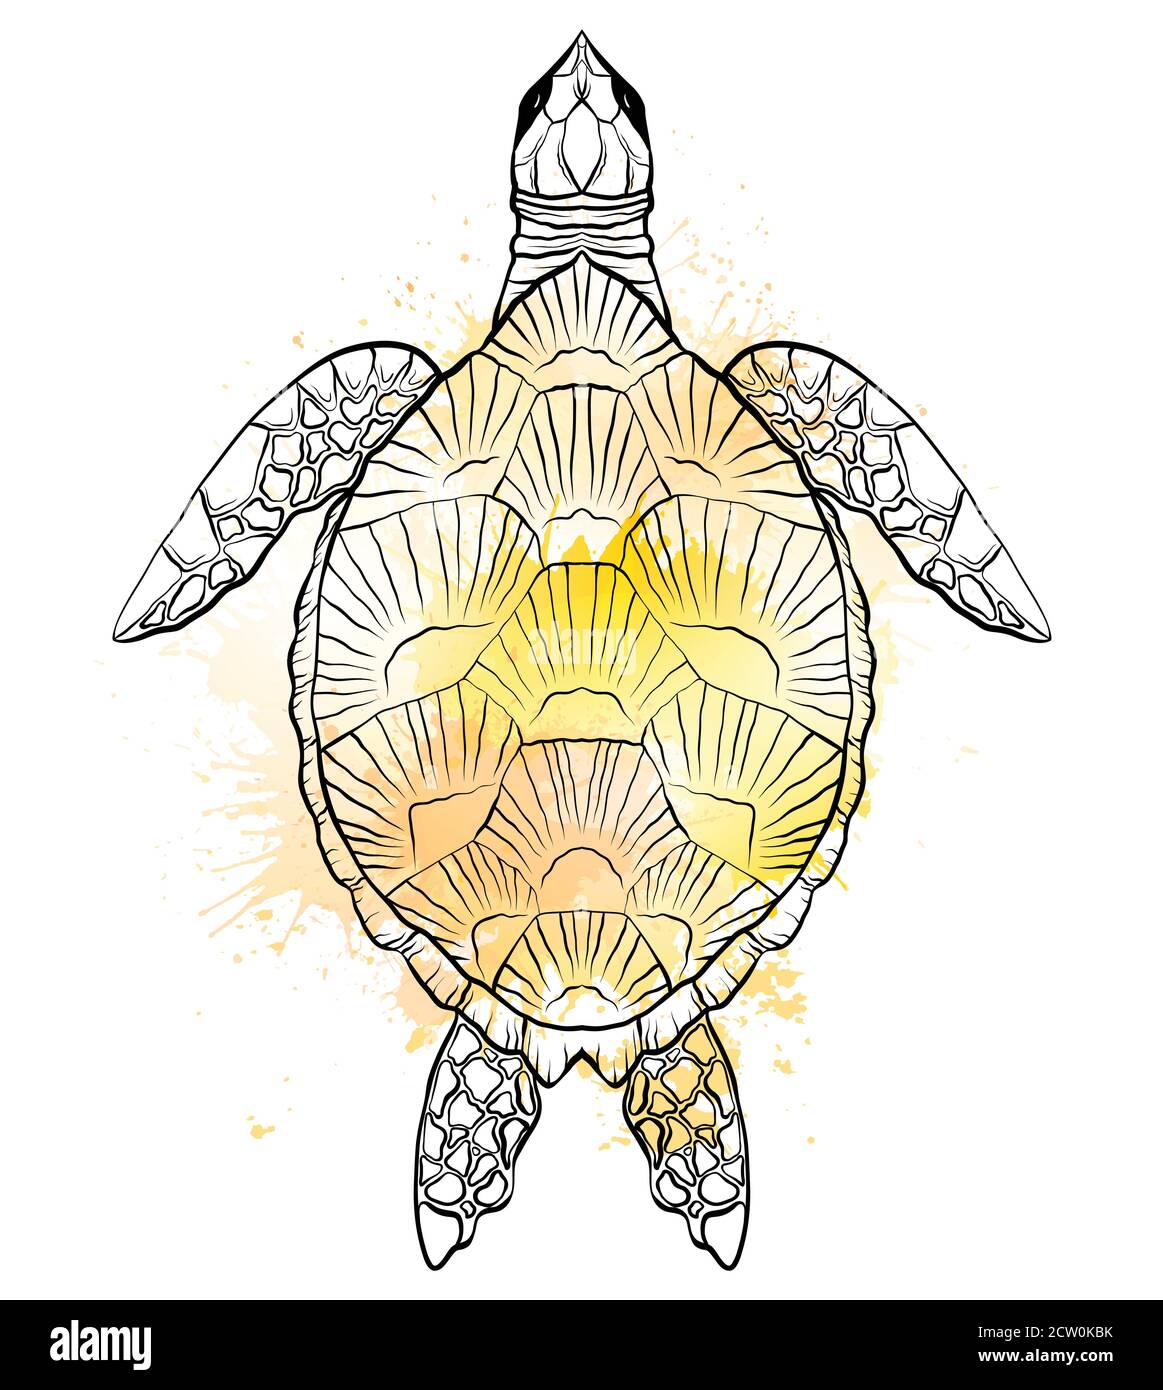 Contour noir et blanc illustration de la tortue avec des éclaboussures d'aquarelle jaune. L'objet est séparé de l'arrière-plan. Illustration linéaire pour pr Illustration de Vecteur